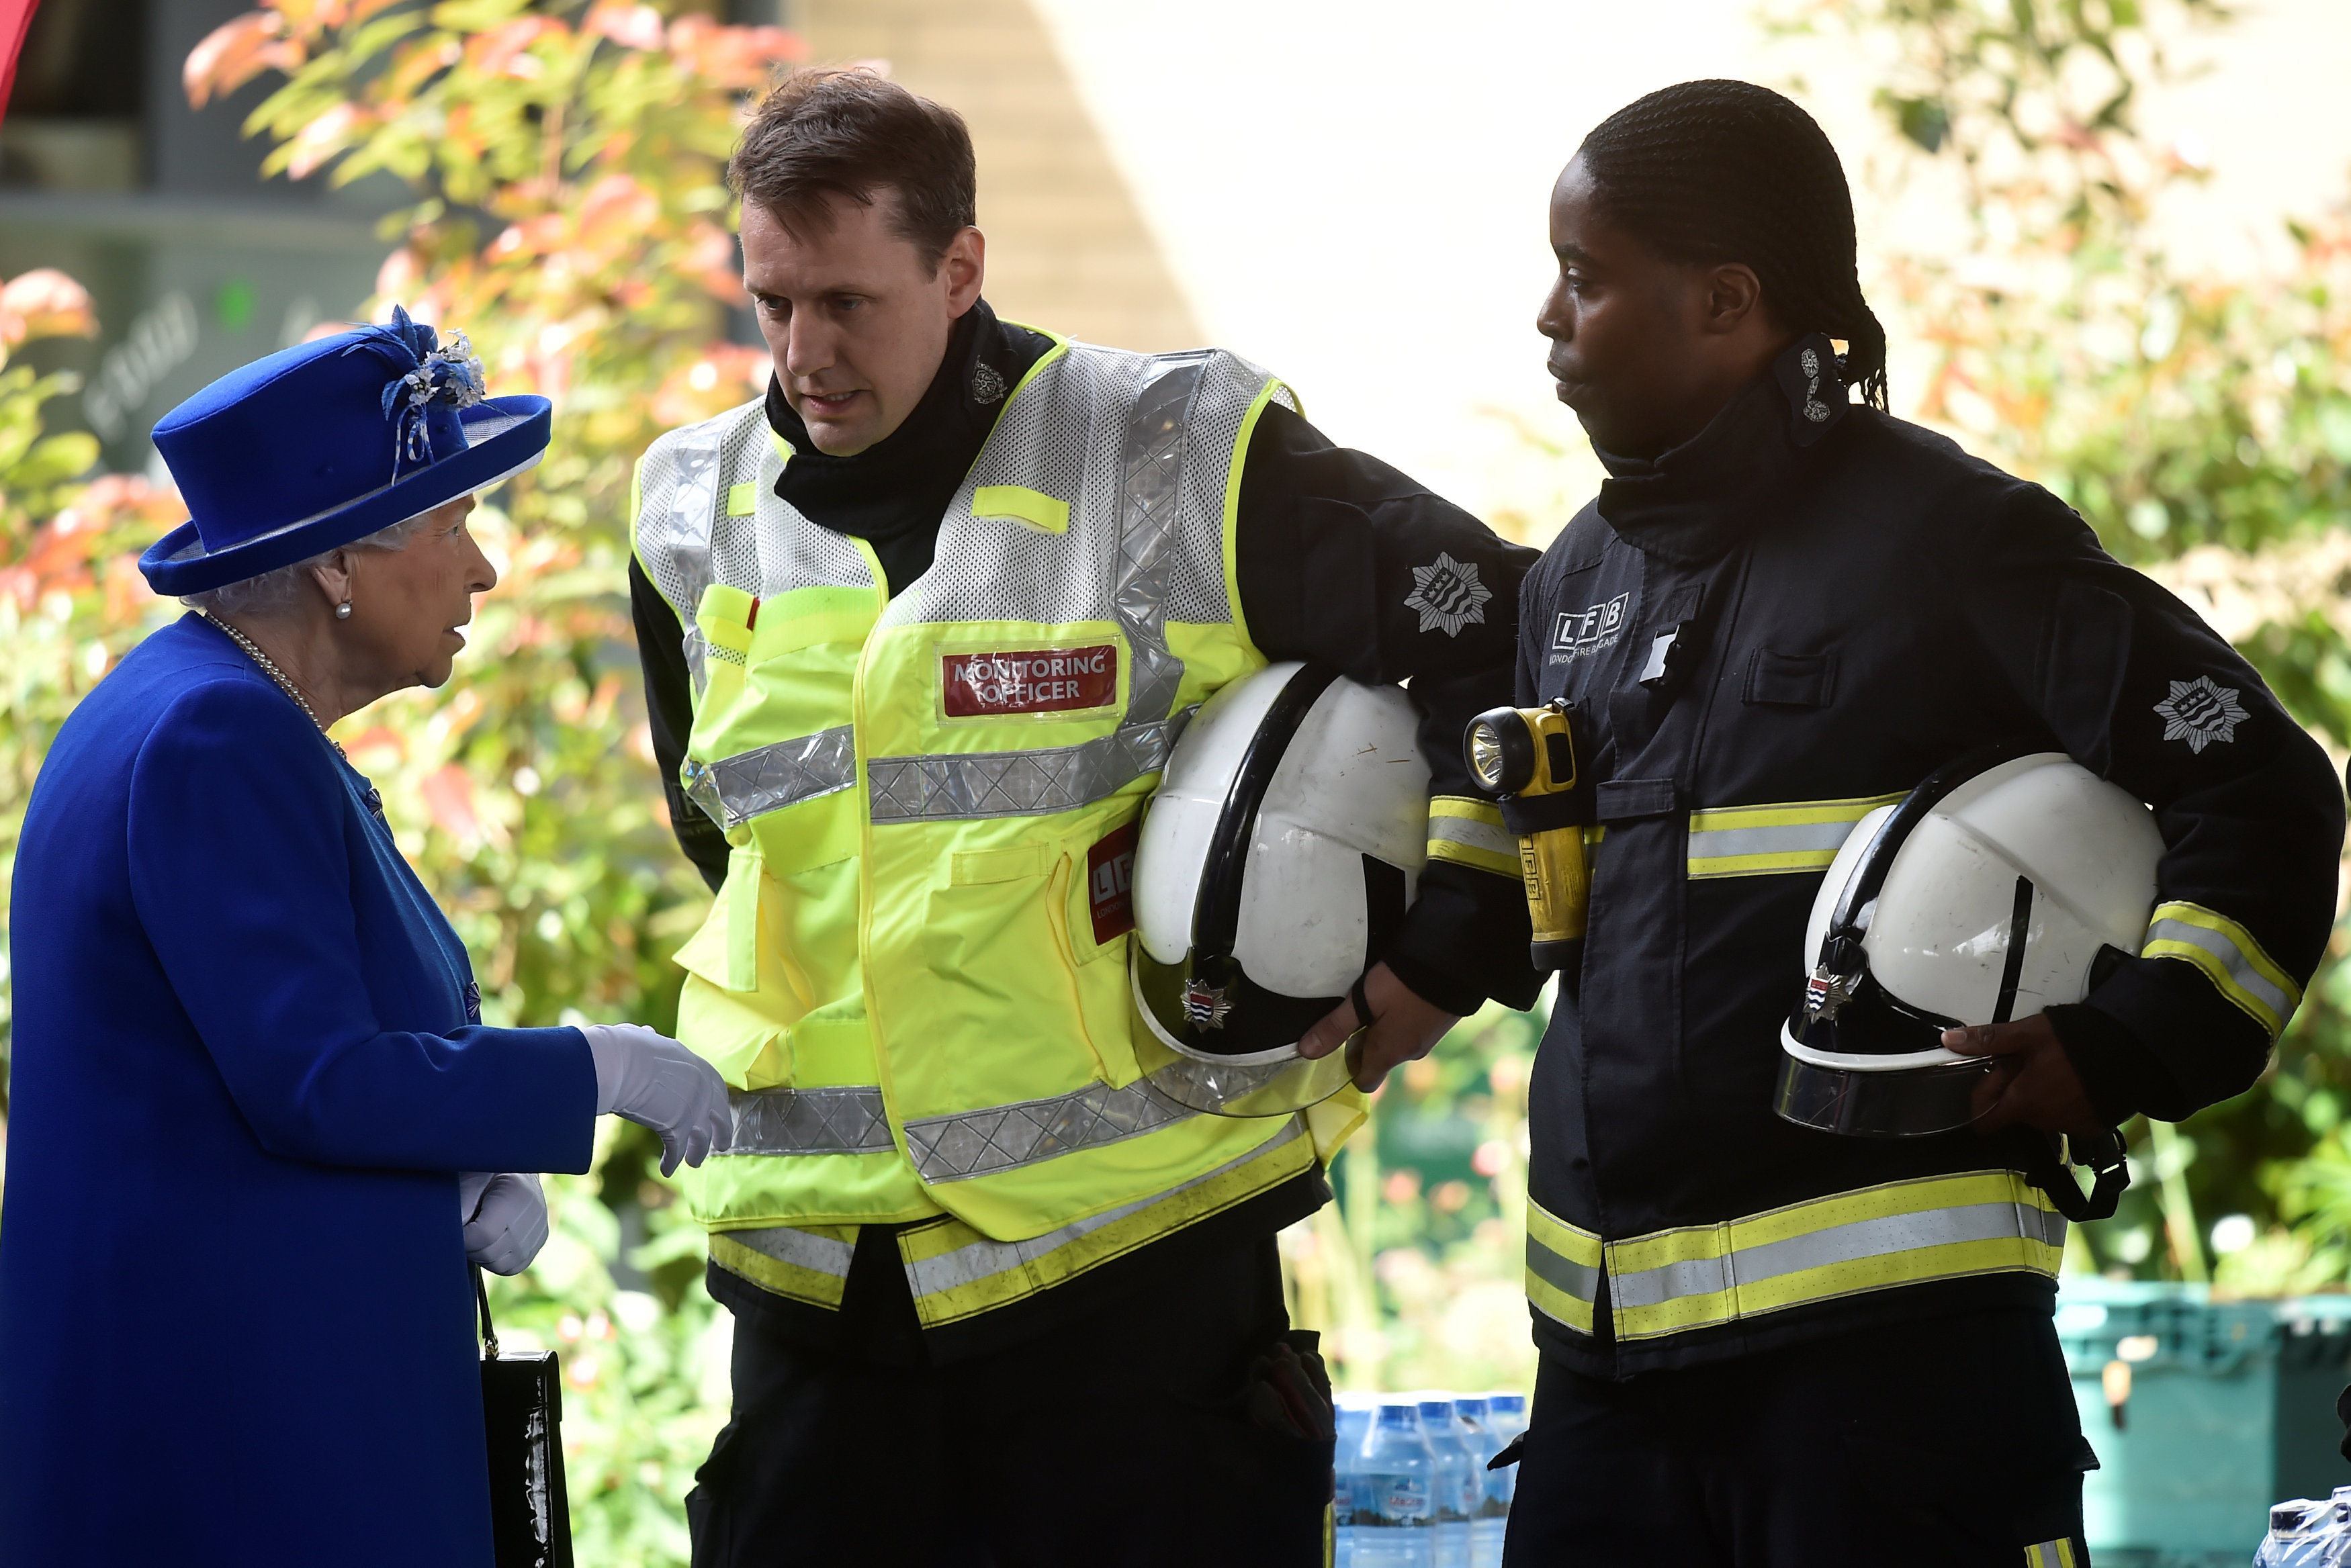 الملكة إليزابيث تلتقى رجال الإطفاء فى مركز ويست واى بلندن